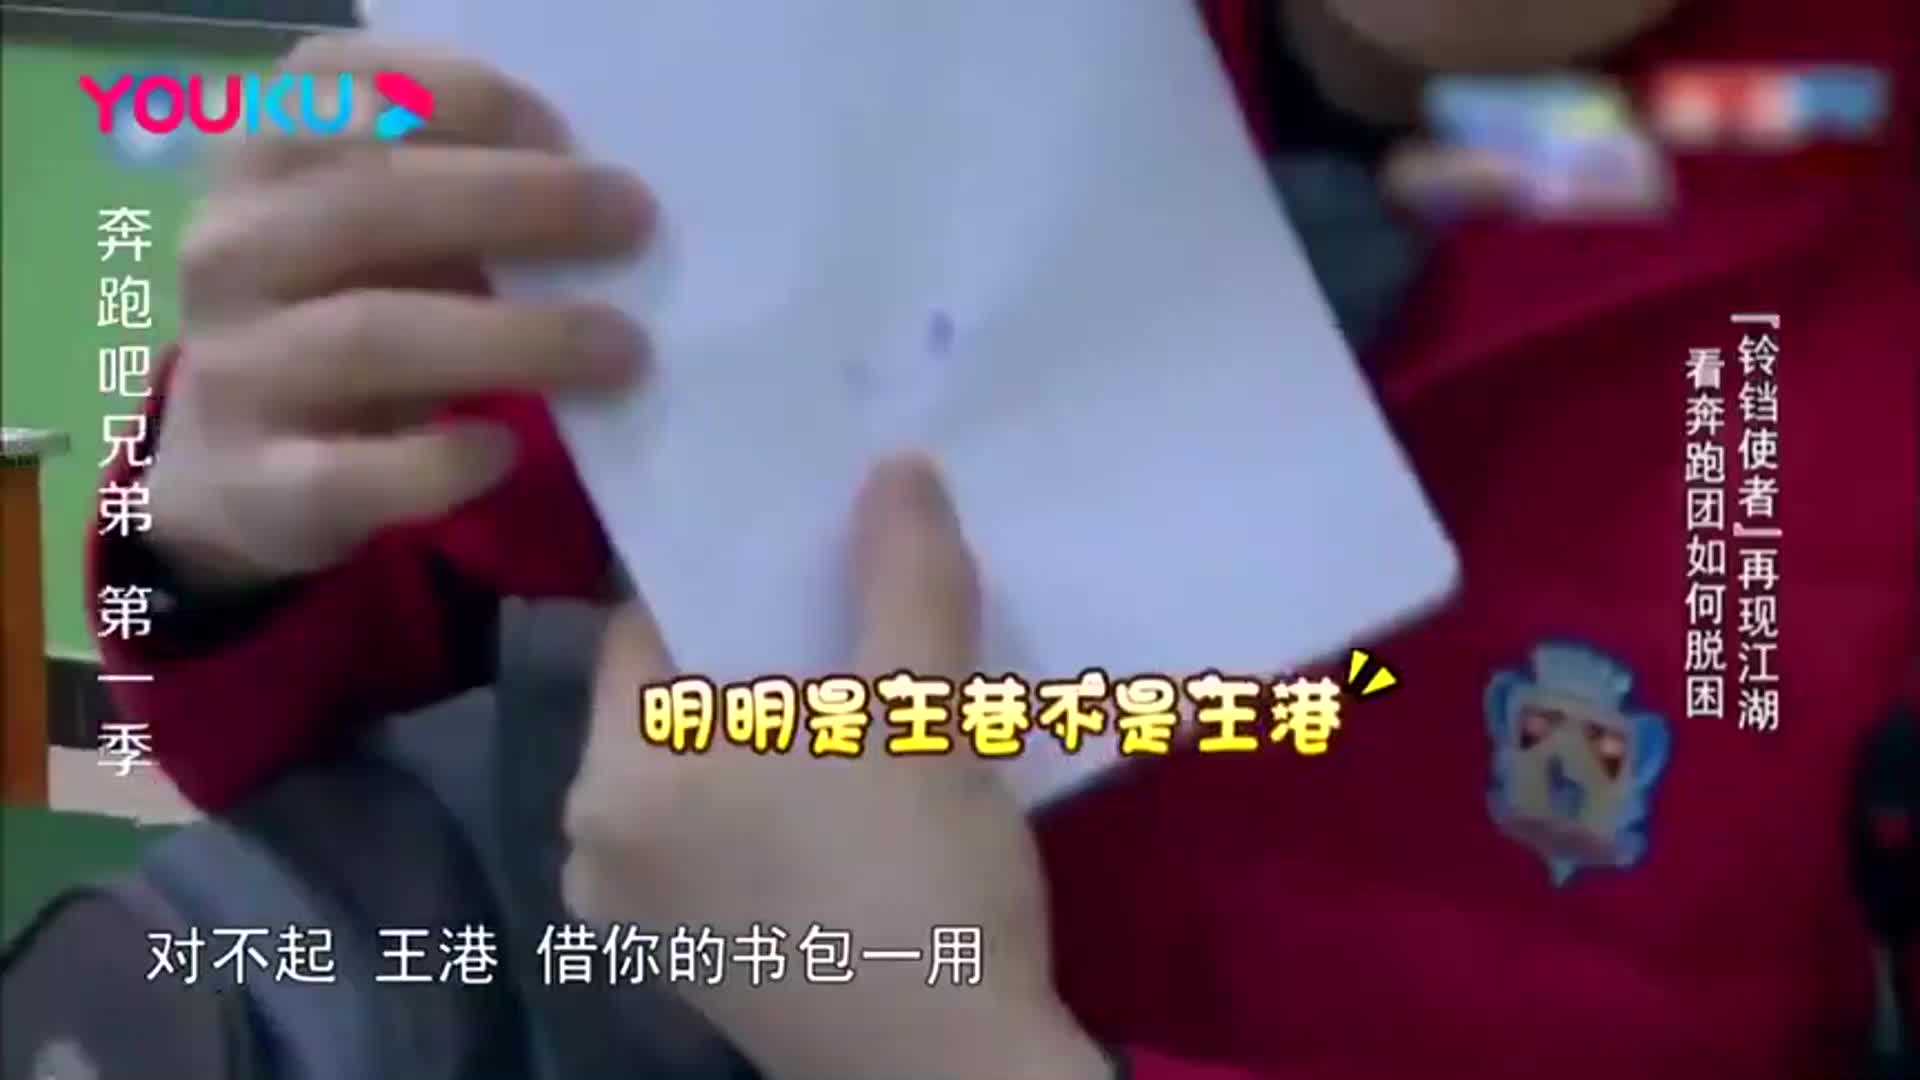 跑男深夜在学校录节目,王祖蓝为保护名牌,竟拿别人书包作掩护